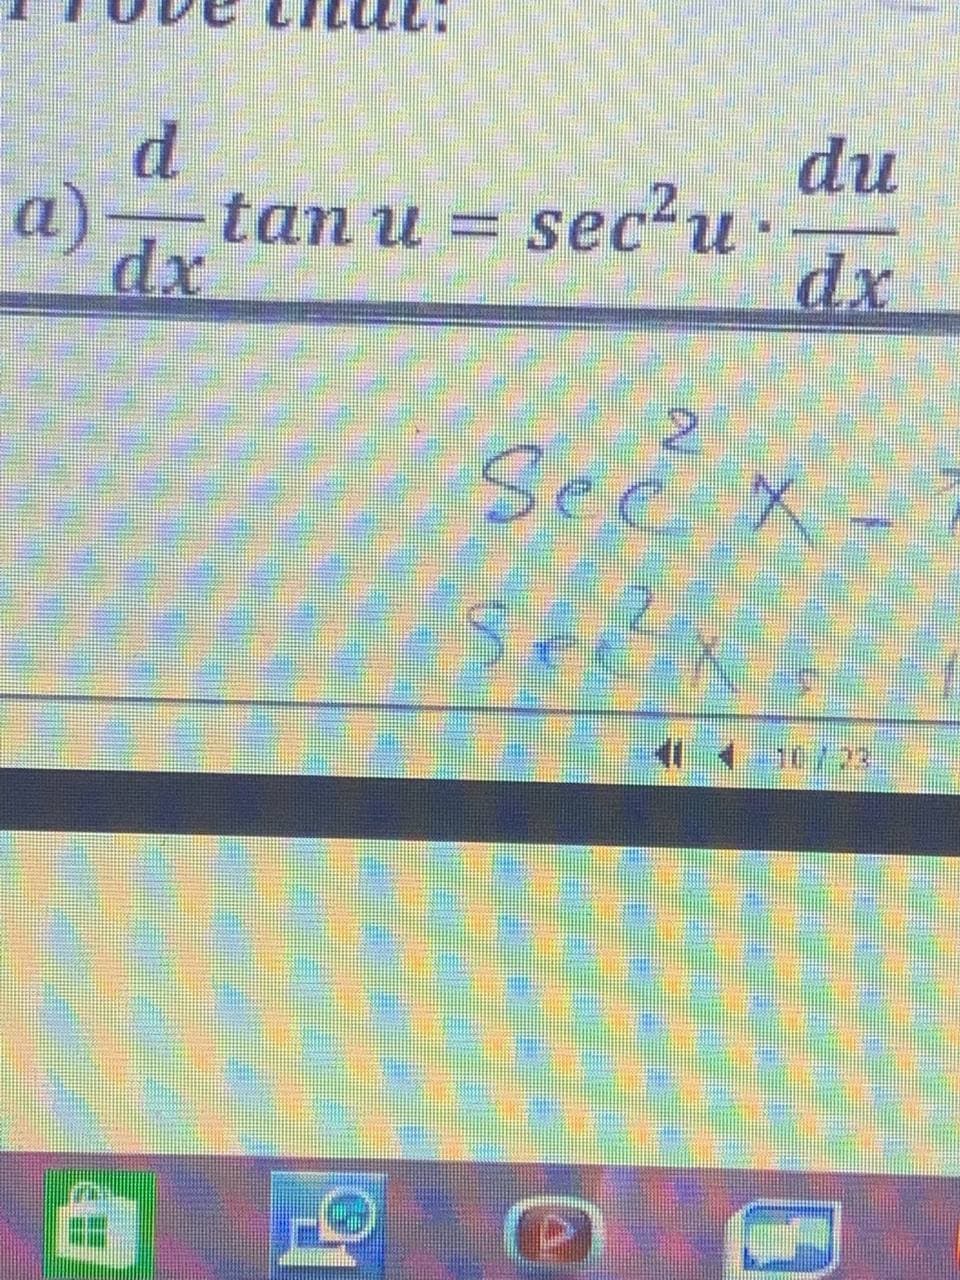 d.
du
a)
tan u = sec'u
dx
dx
See x
अ
